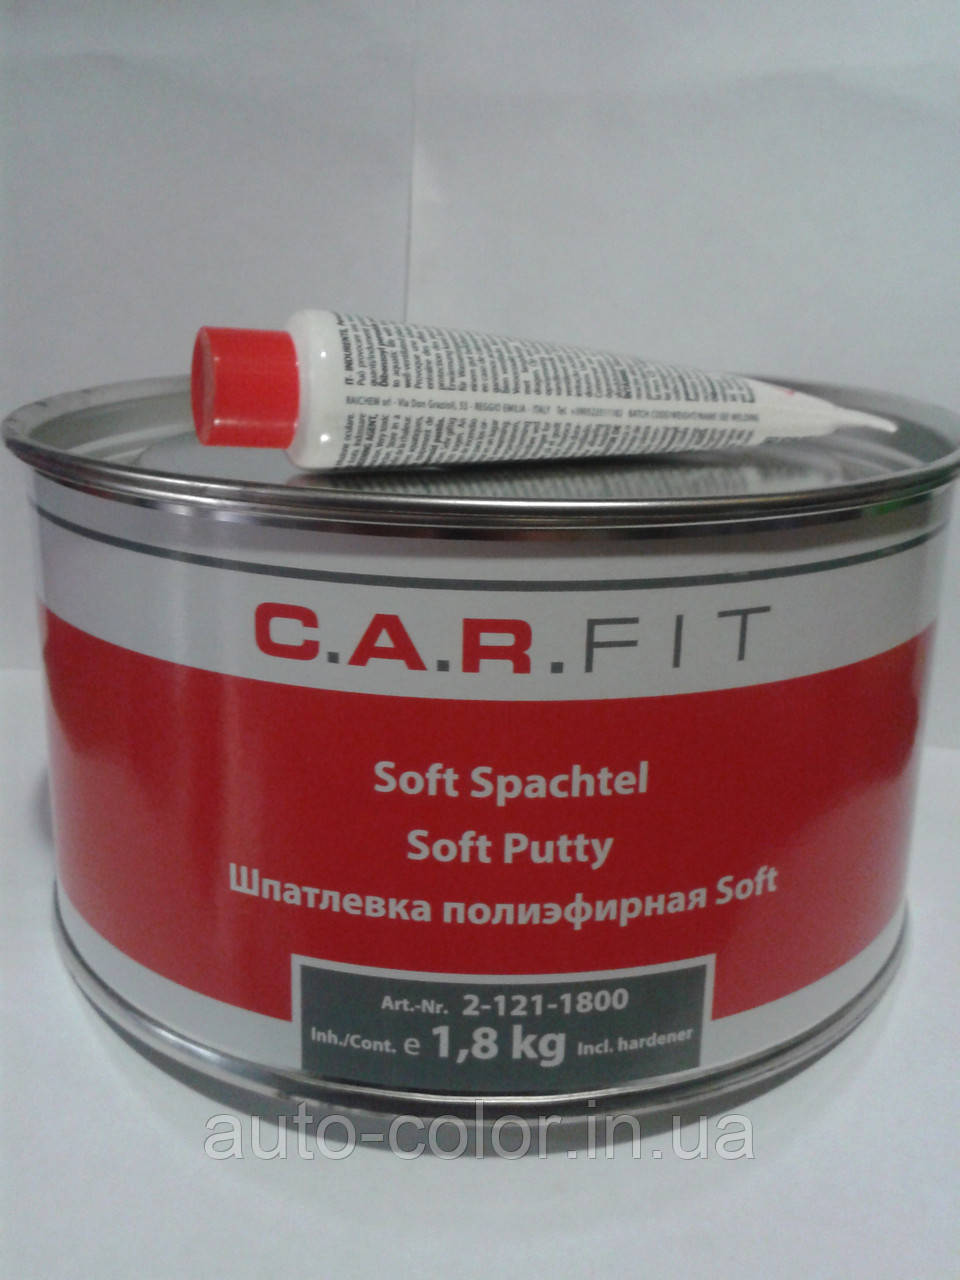 C.A.R.FIT Soft шпаклівка поліефірна 1,8 кг